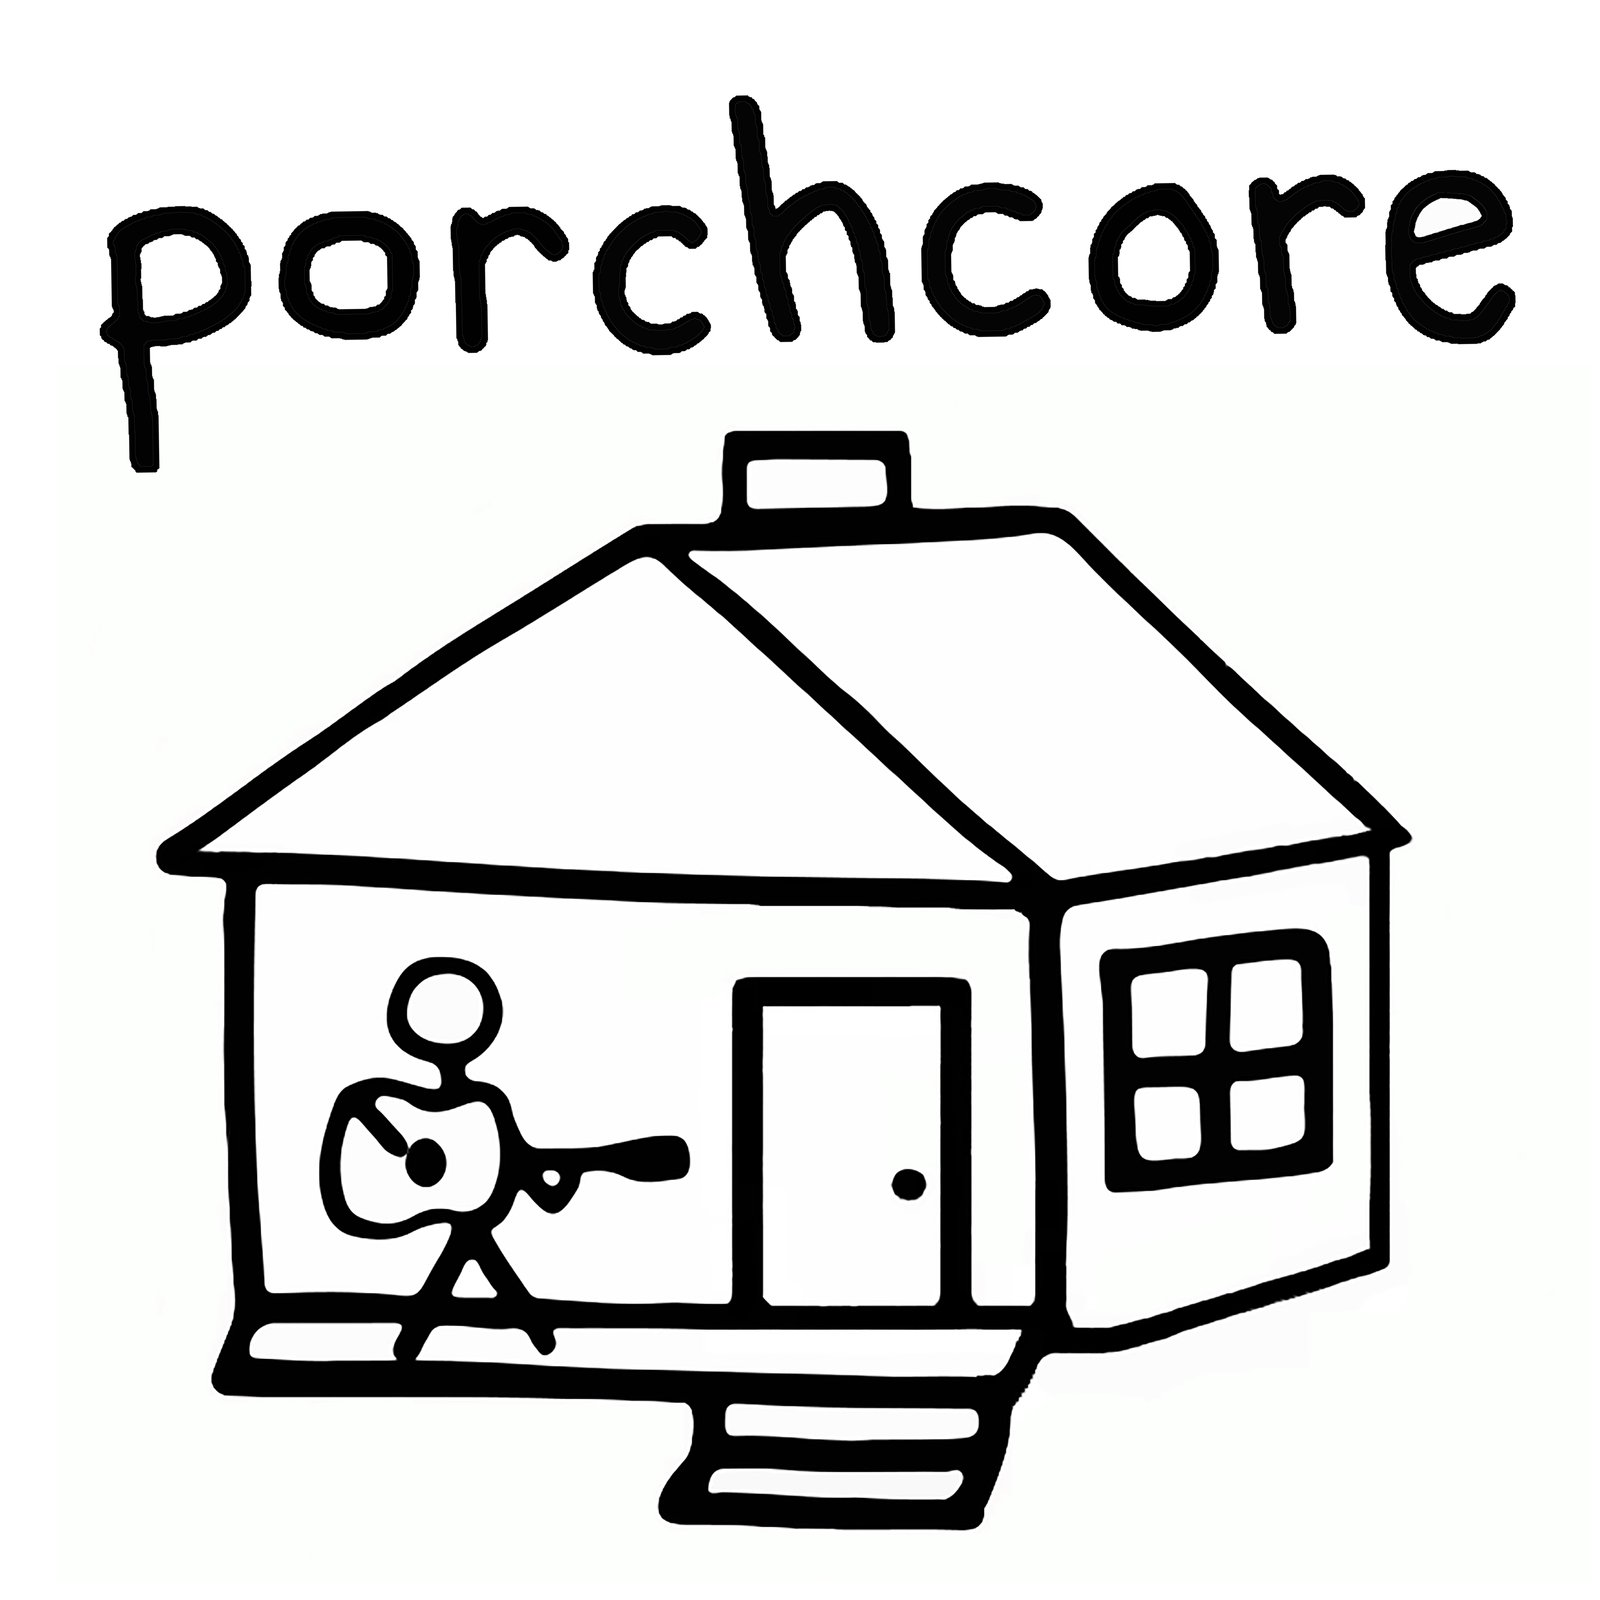 porchcore 